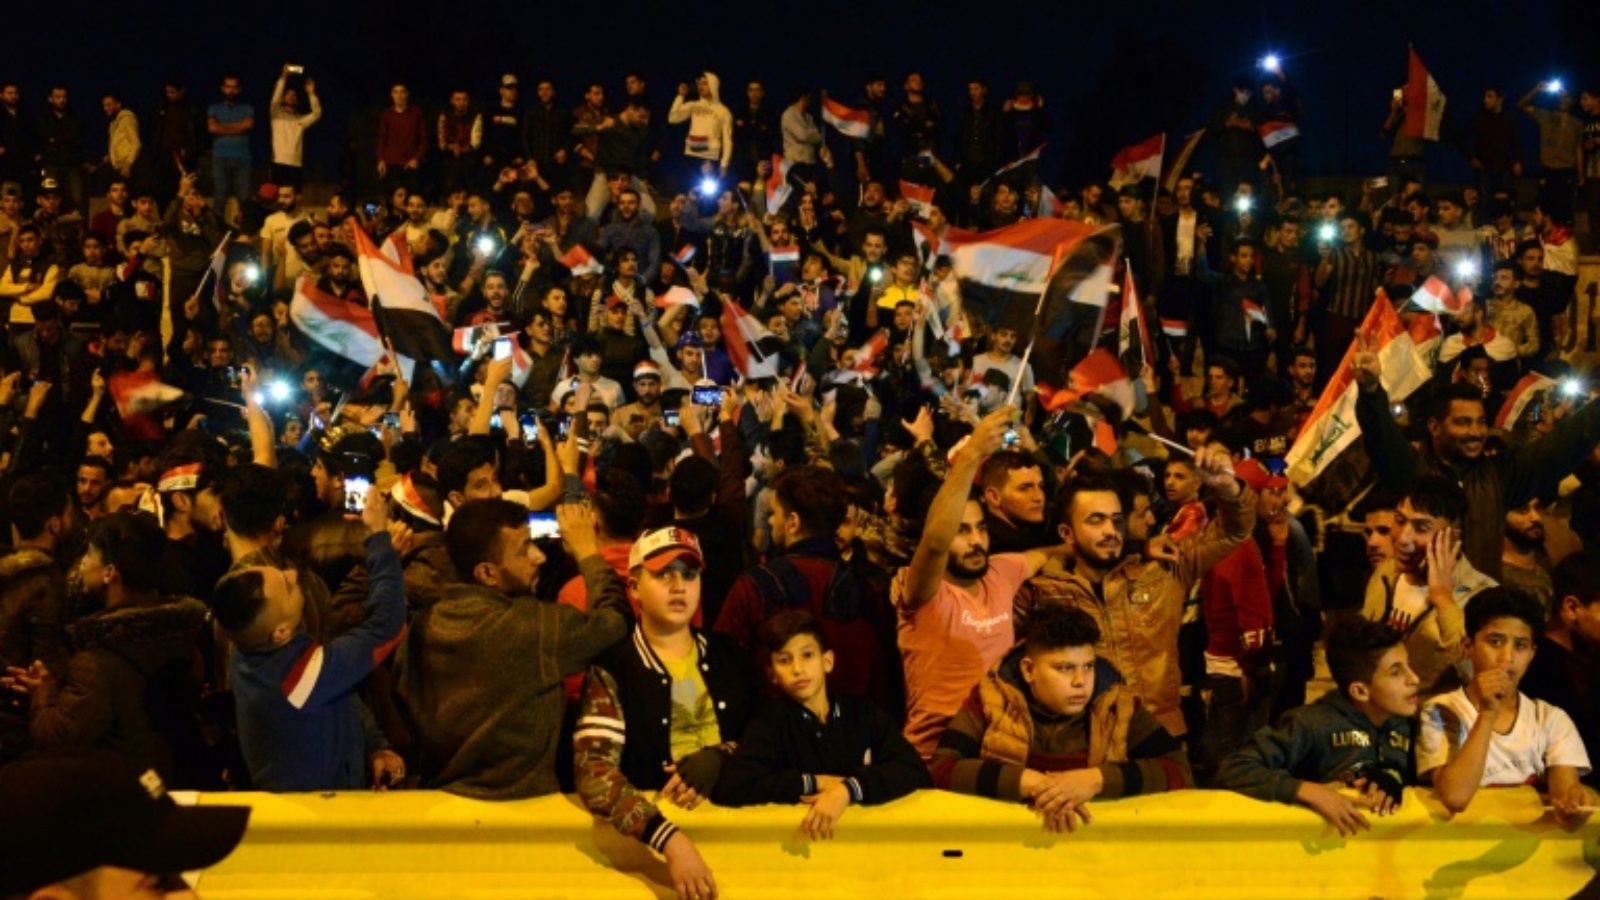 الجماهير العراقية ستحرم من مشاهدة مباراة العراق والامارات في العاصمة بغداد بعدما تم نقلها إلى السعودية